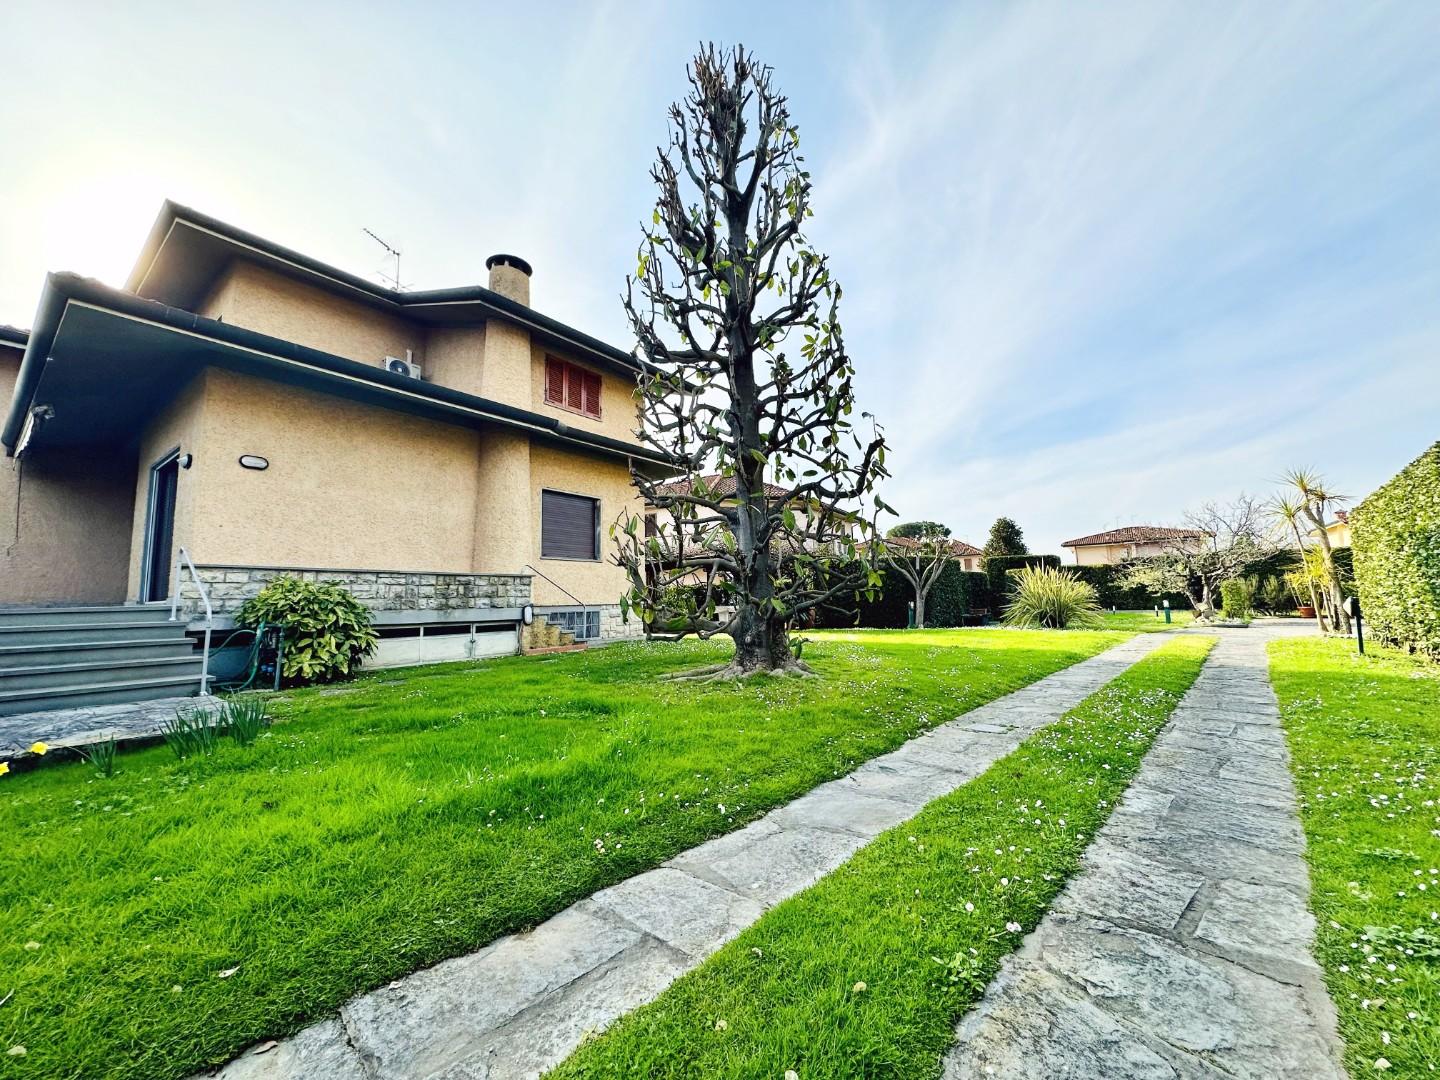 Villa arredata in affitto, Pietrasanta fiumetto